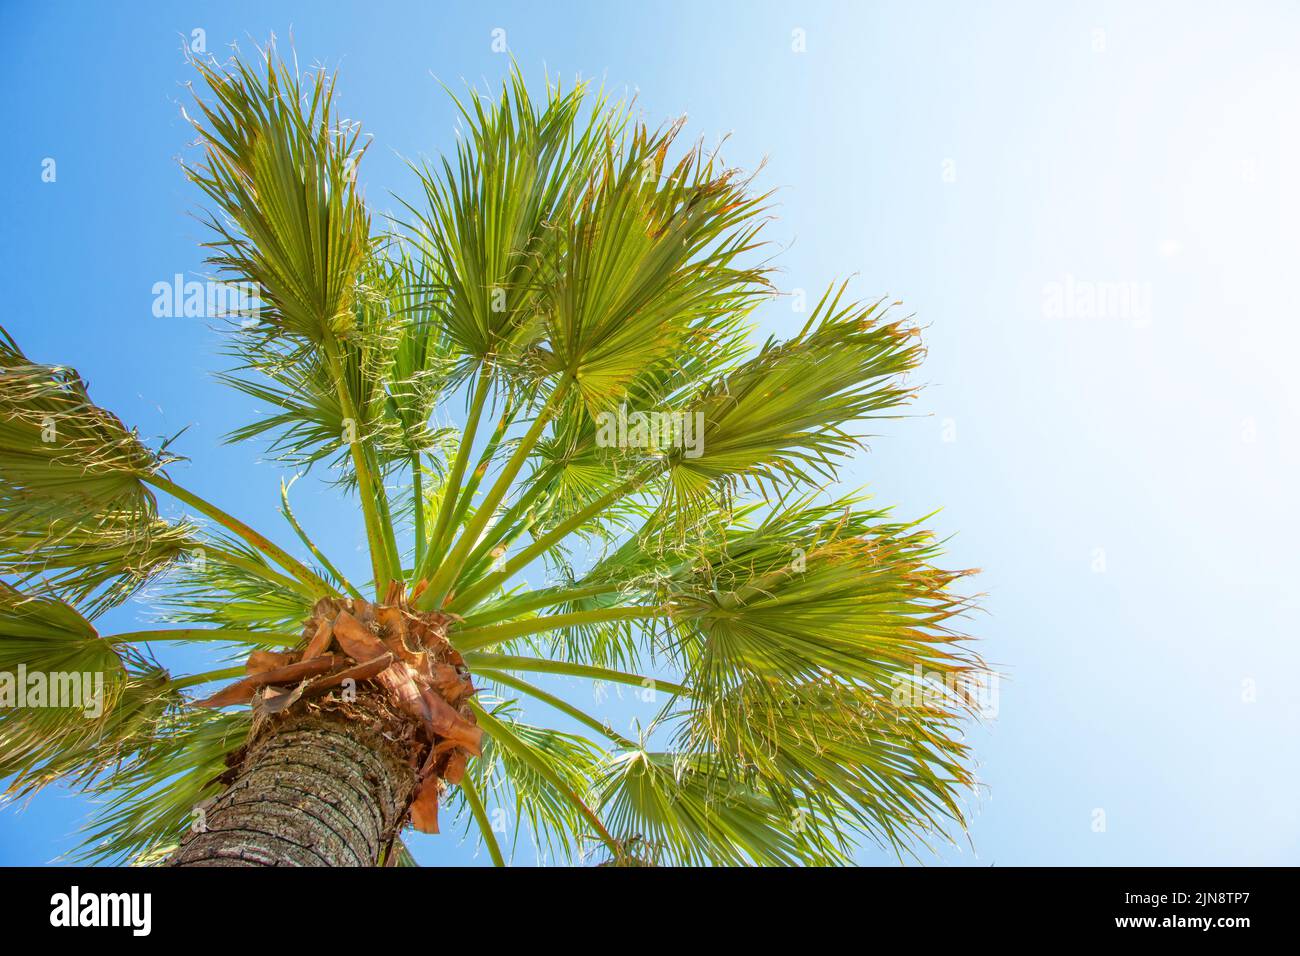 La palma sale contra el cielo azul en un caluroso día de verano Foto de stock